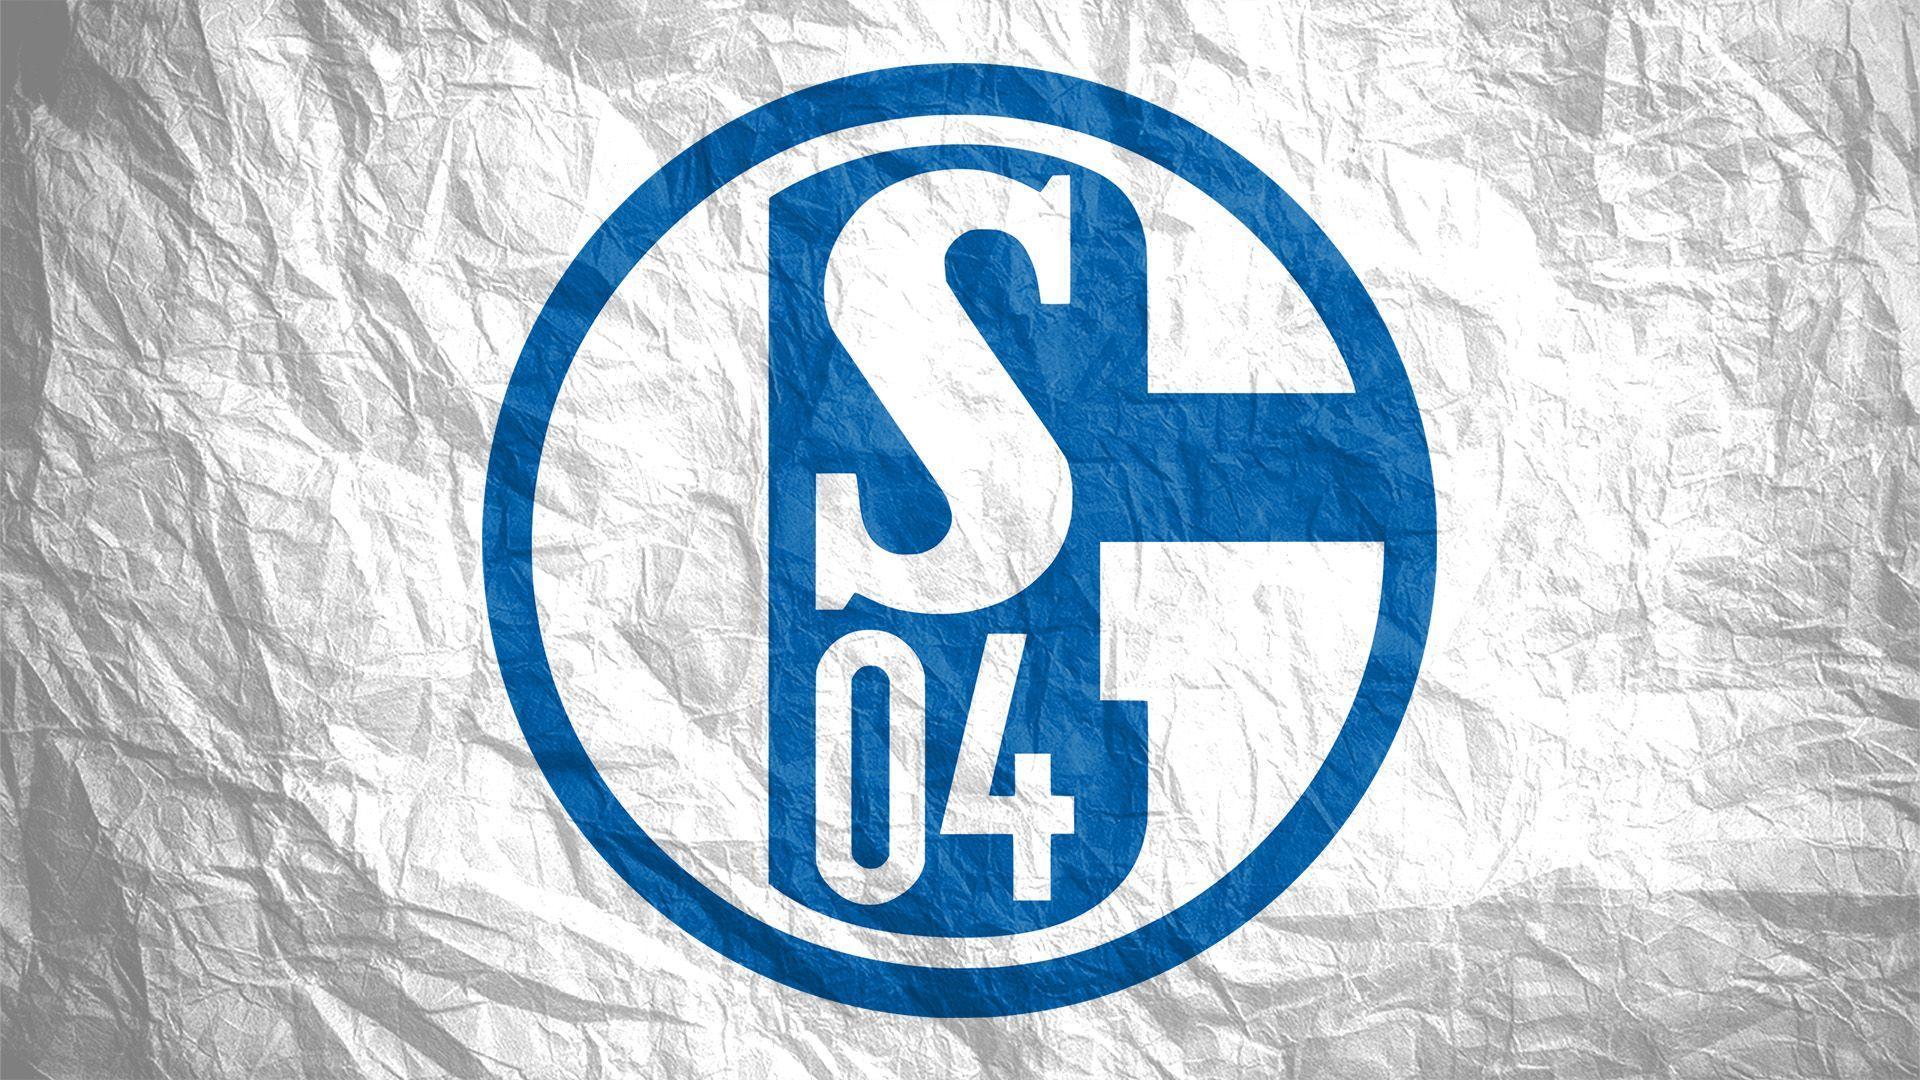 FC Schalke 04ßballclub Gelsenkirchen Schalke 04 E.V